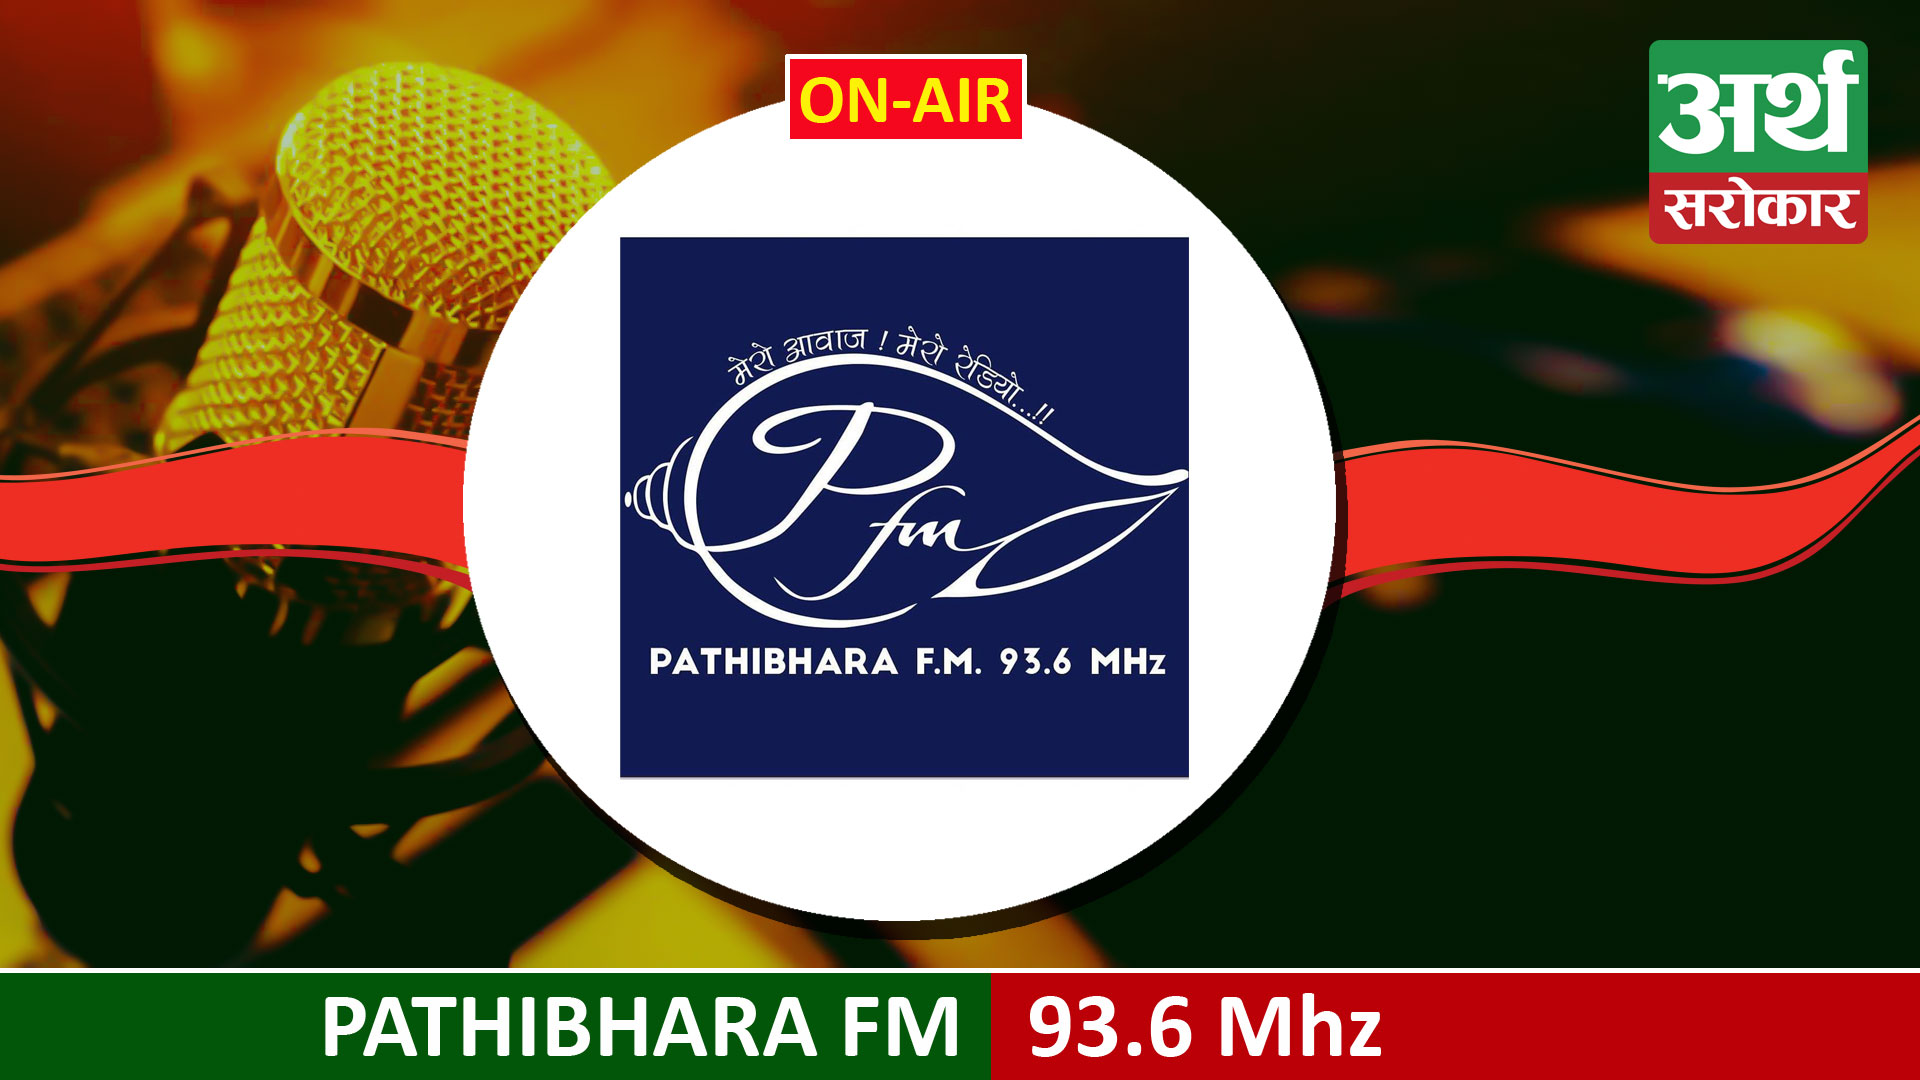 Pathibhara FM 93.6 MHz